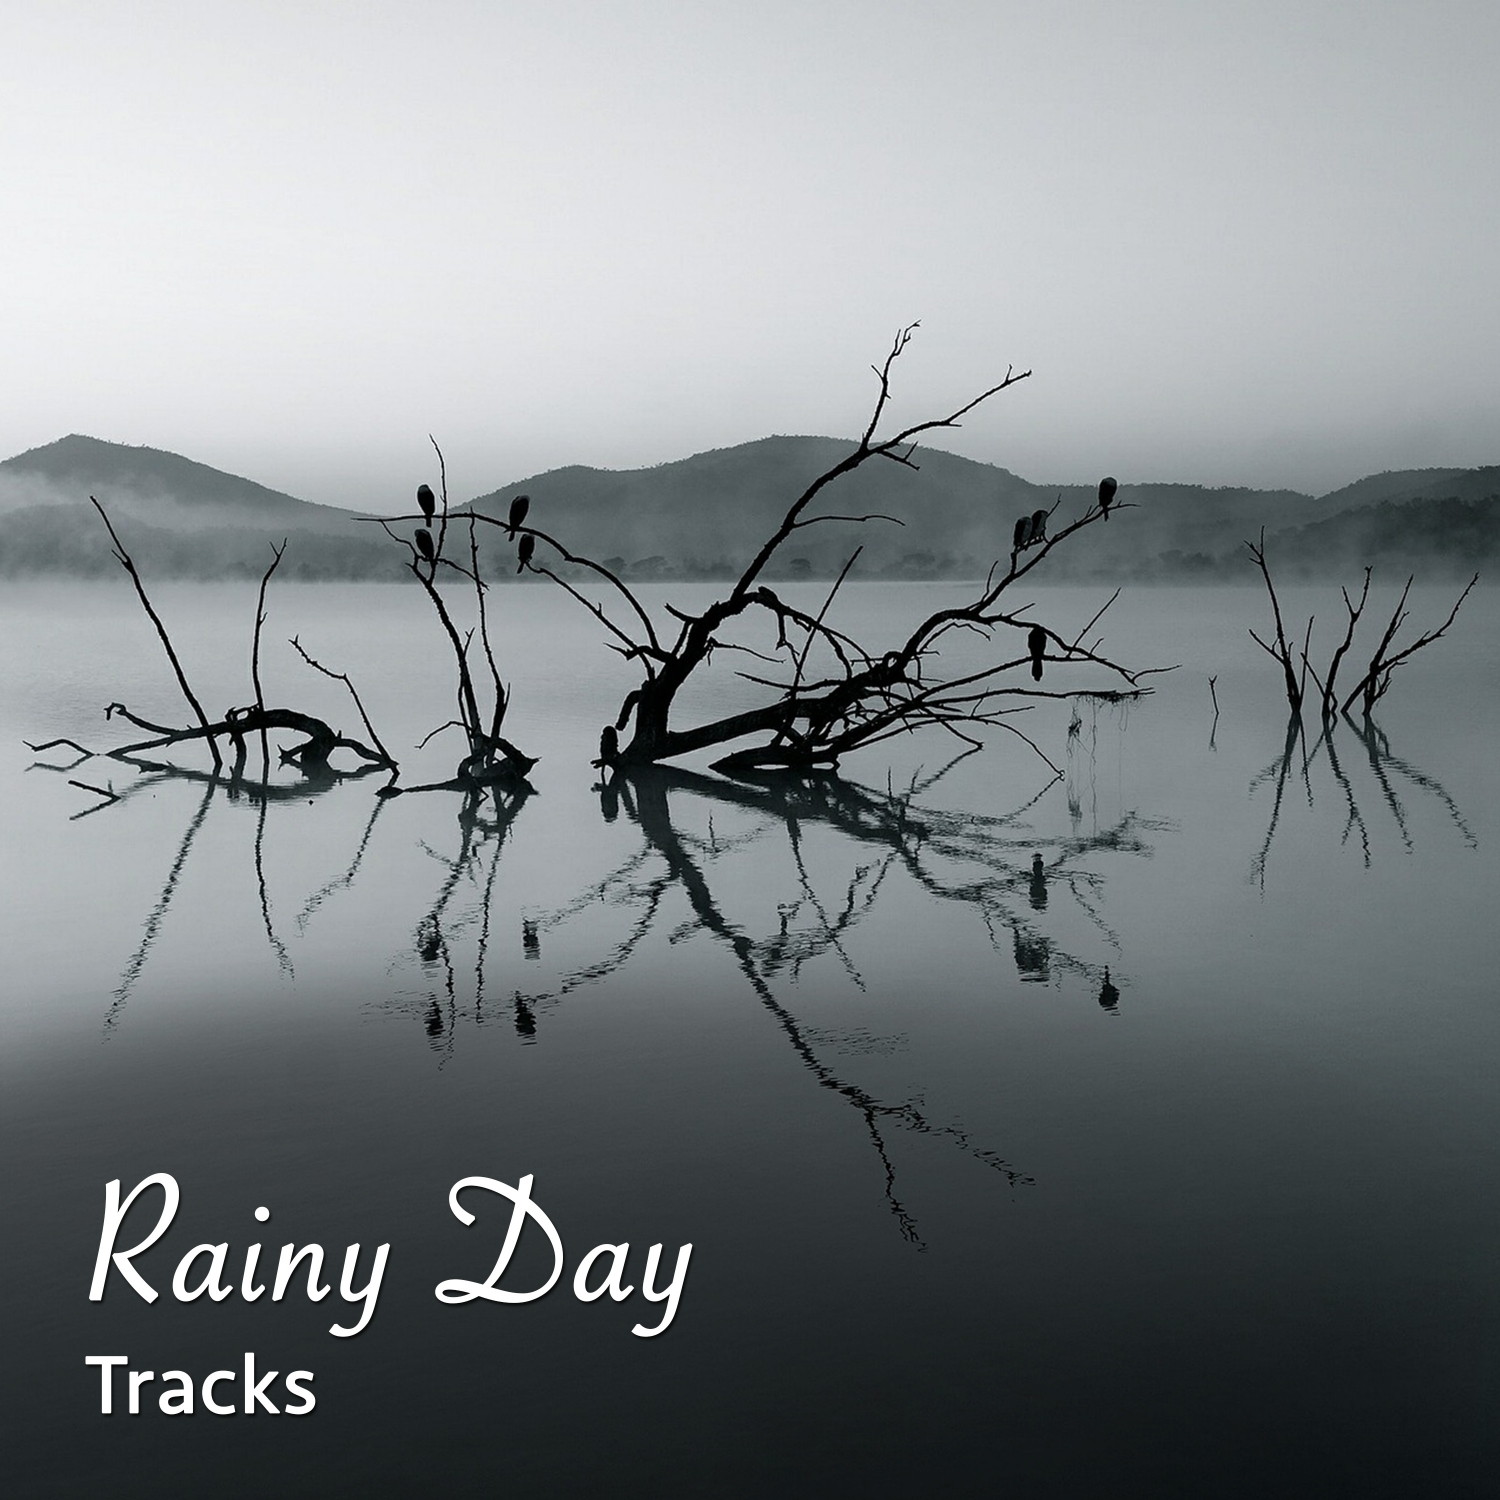 19 Rainy Day Tracks, Springtime Rain Sounds